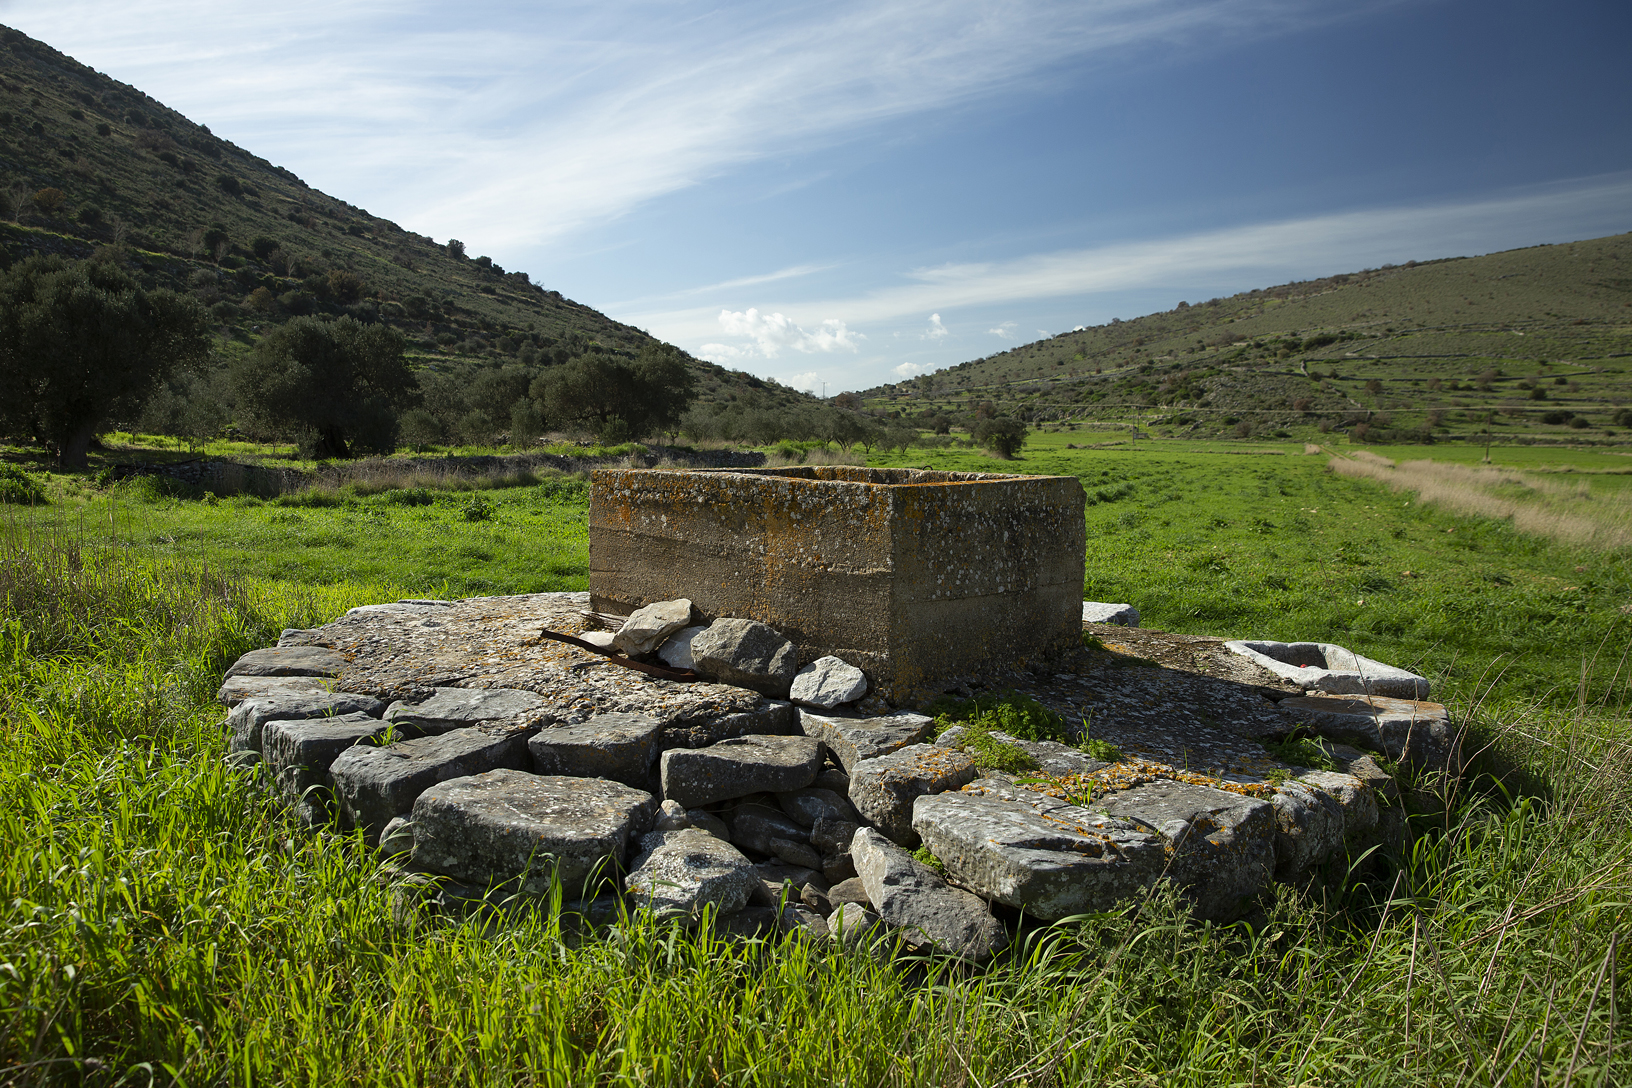 Τετράγωνο πηγάδι στον κάμπο, χωριό Αργυρό. Φωτογραφία: ©Βασίλης Συκάς, για τον Δήμο Κύμης-Αλιβερίου